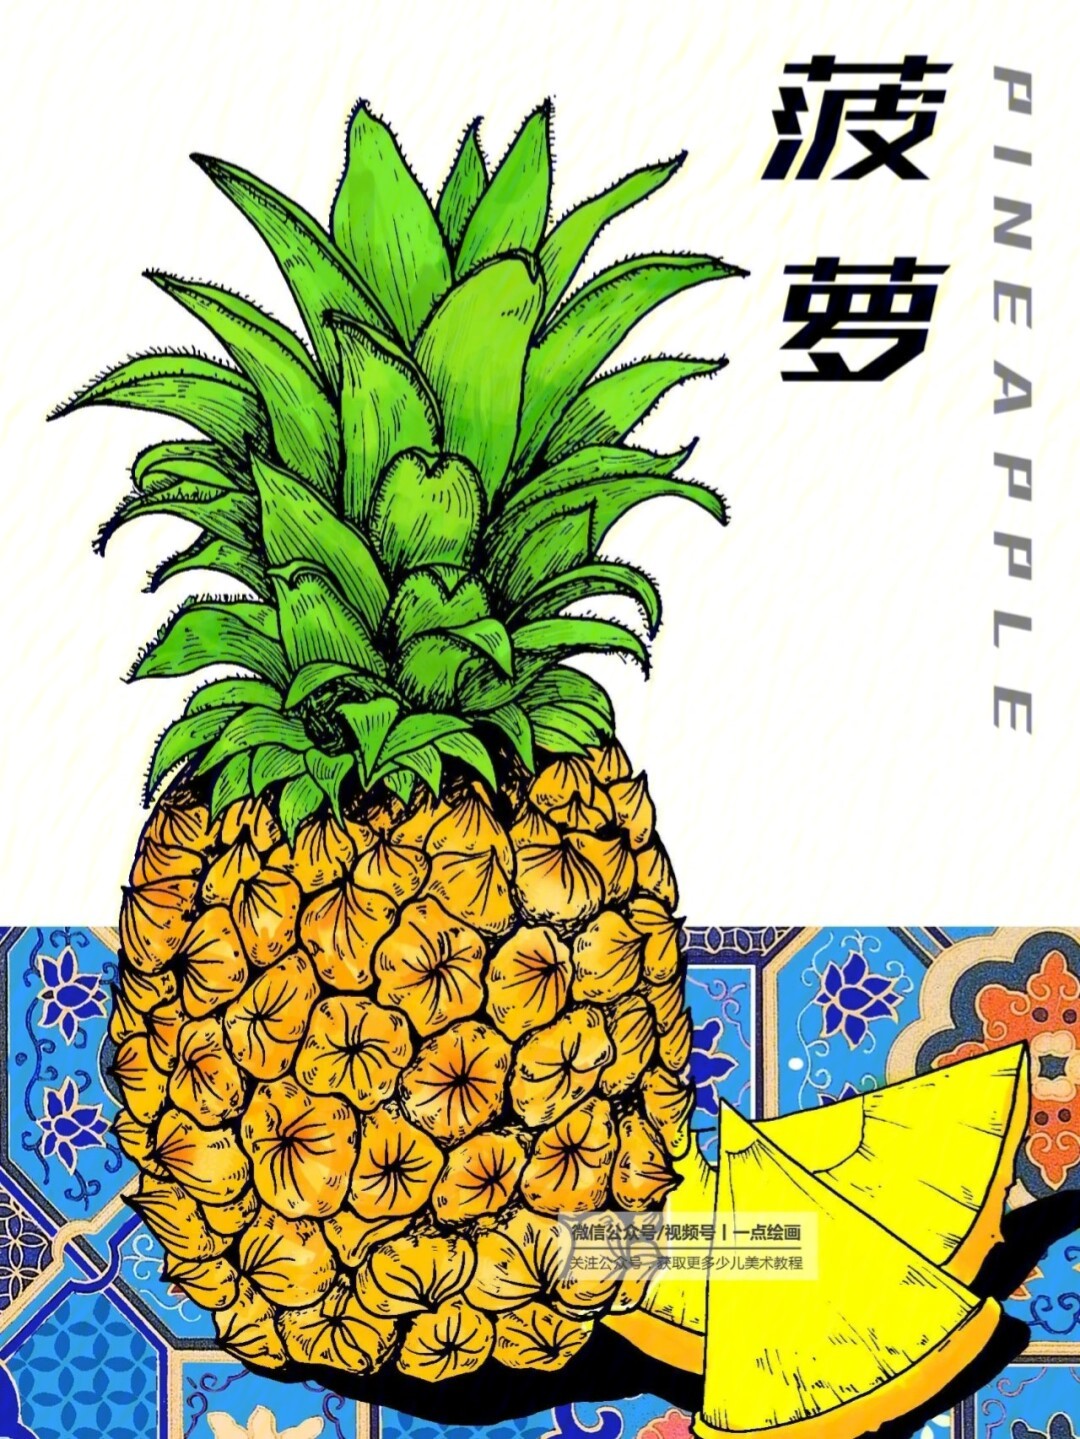 菠萝创意联想设计图片